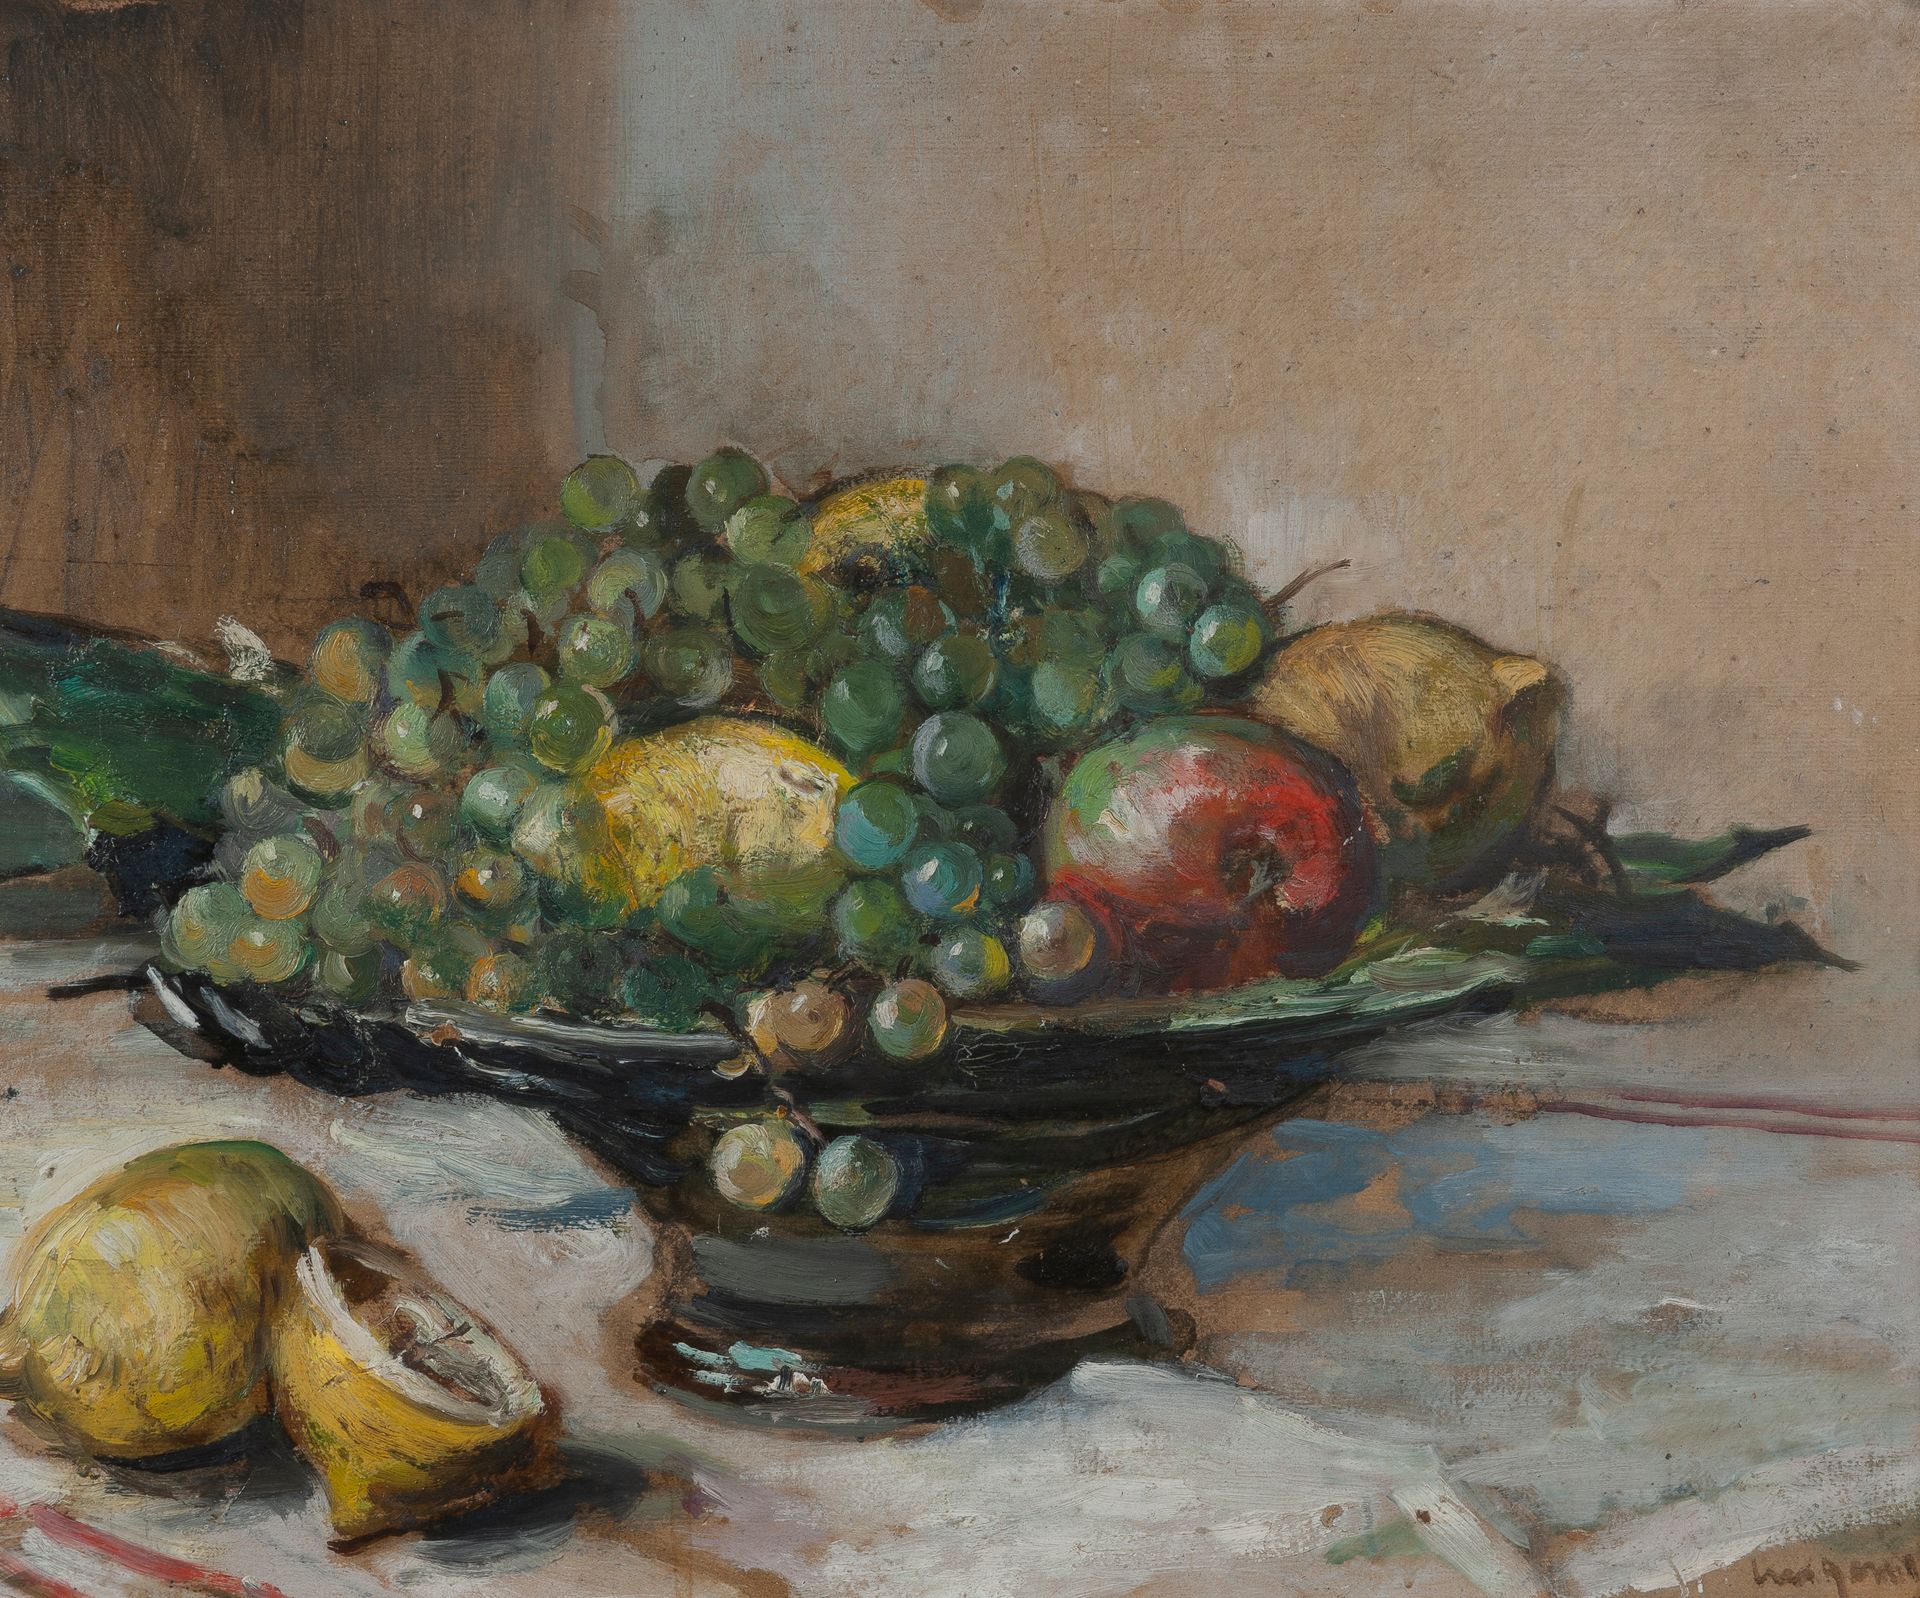 Null 斐迪南-路易吉尼(1870-1943)

柠檬和果酱的静物画

右下角有签名的油画

37 x 45厘米。